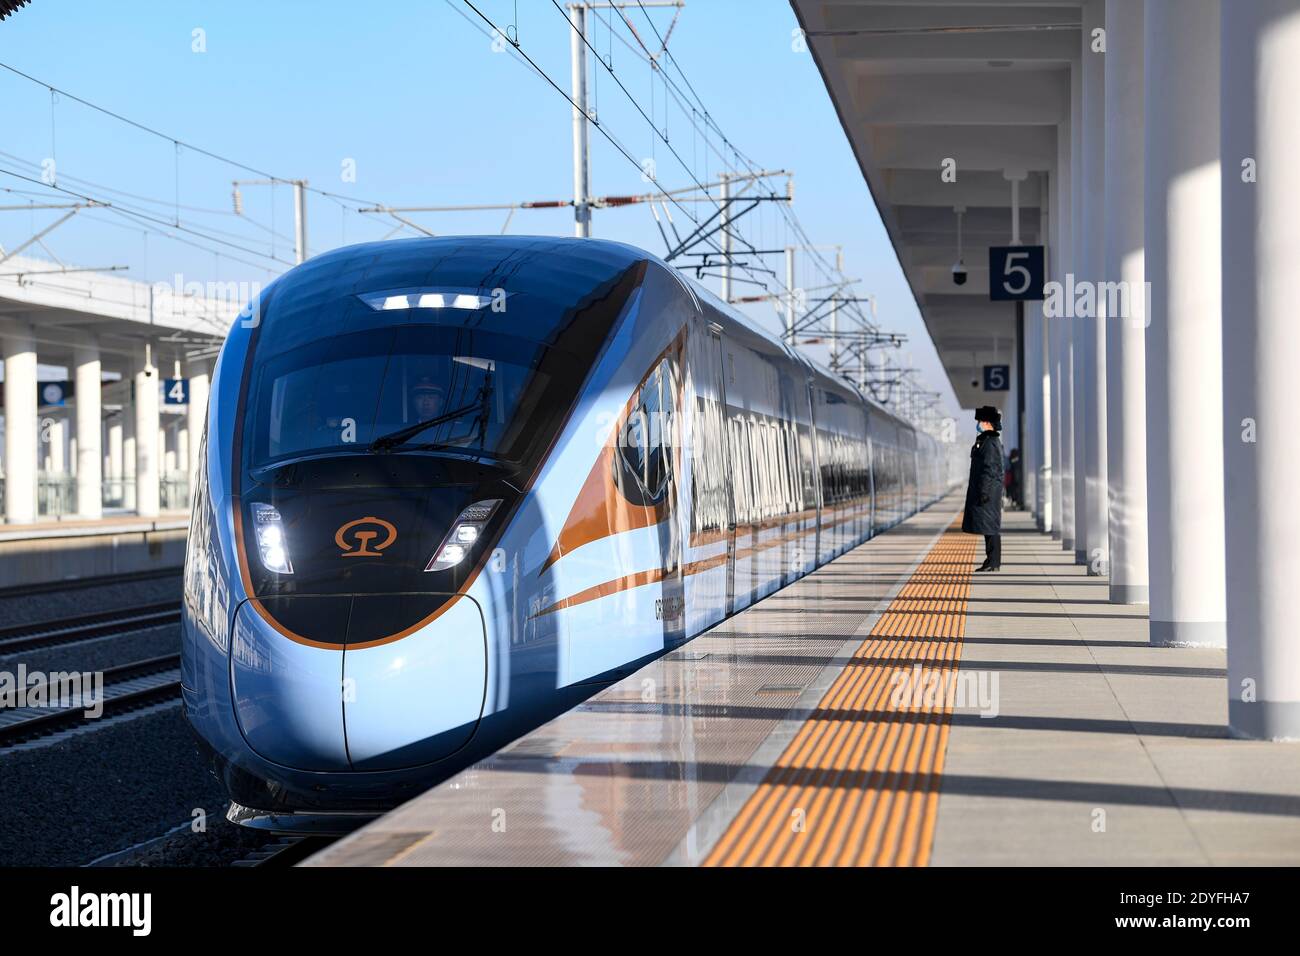 Yinchuan. Dezember 2020. Der Hochgeschwindigkeitszug D4385, der Yinchuan mit Xi'an verbindet, passiert am 26. Dezember 2020 den Bahnhof Wuzhong in der Autonomen Region Ningxia Hui im Nordwesten Chinas. Am Samstag wurde die Hochgeschwindigkeitsbahn Yinchuan-Xi'an in Betrieb genommen, die Ningxia mit dem Hochgeschwindigkeitsbahnnetz verbindet. Die 618 Kilometer langen Gleise ermöglichen es den Zügen, mit einer Geschwindigkeit von 250 Kilometern pro Stunde zu fahren. Die Bahn würde die Fahrzeit von 14 Stunden auf etwa drei Stunden reduzieren. Quelle: Feng Kaihua/Xinhua/Alamy Live News Stockfoto